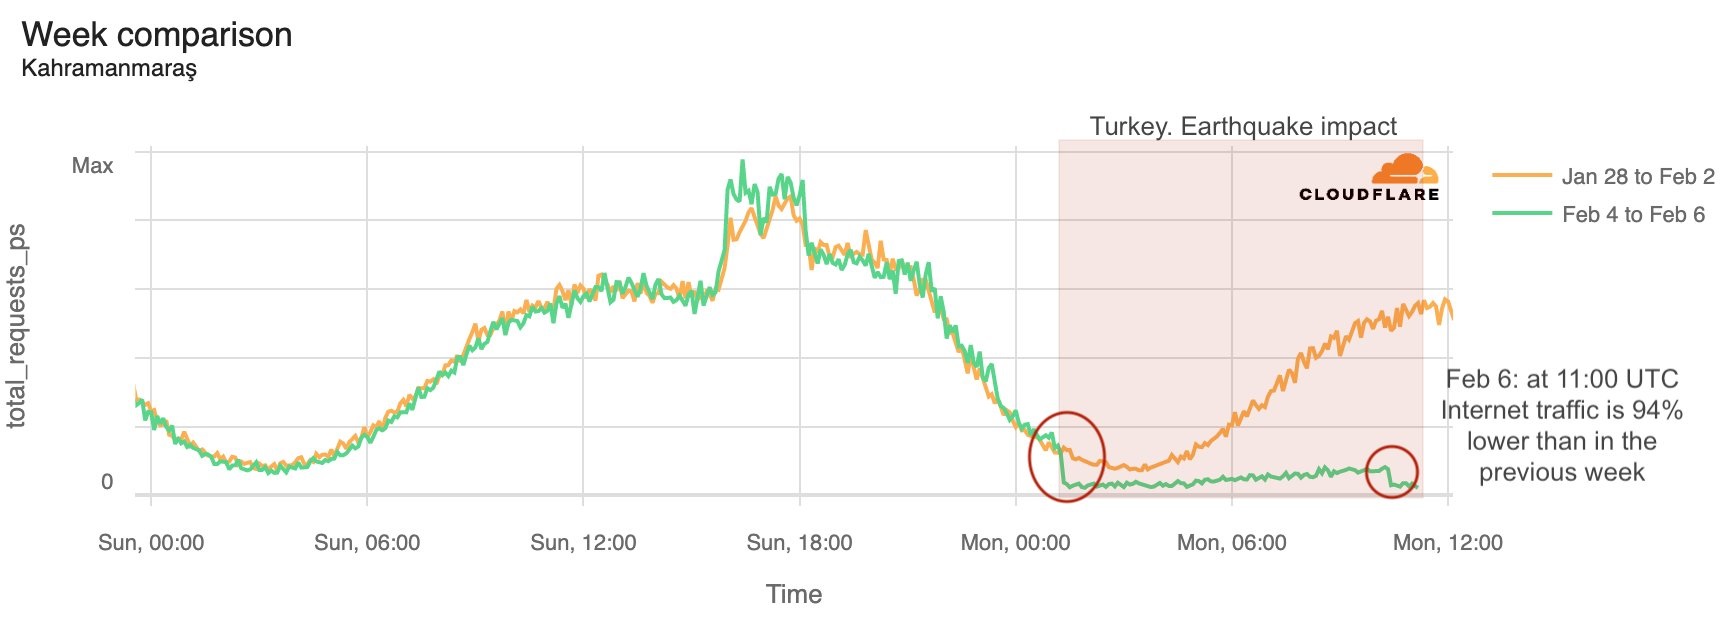 землетруси у Туреччині Землетрясения в Турции